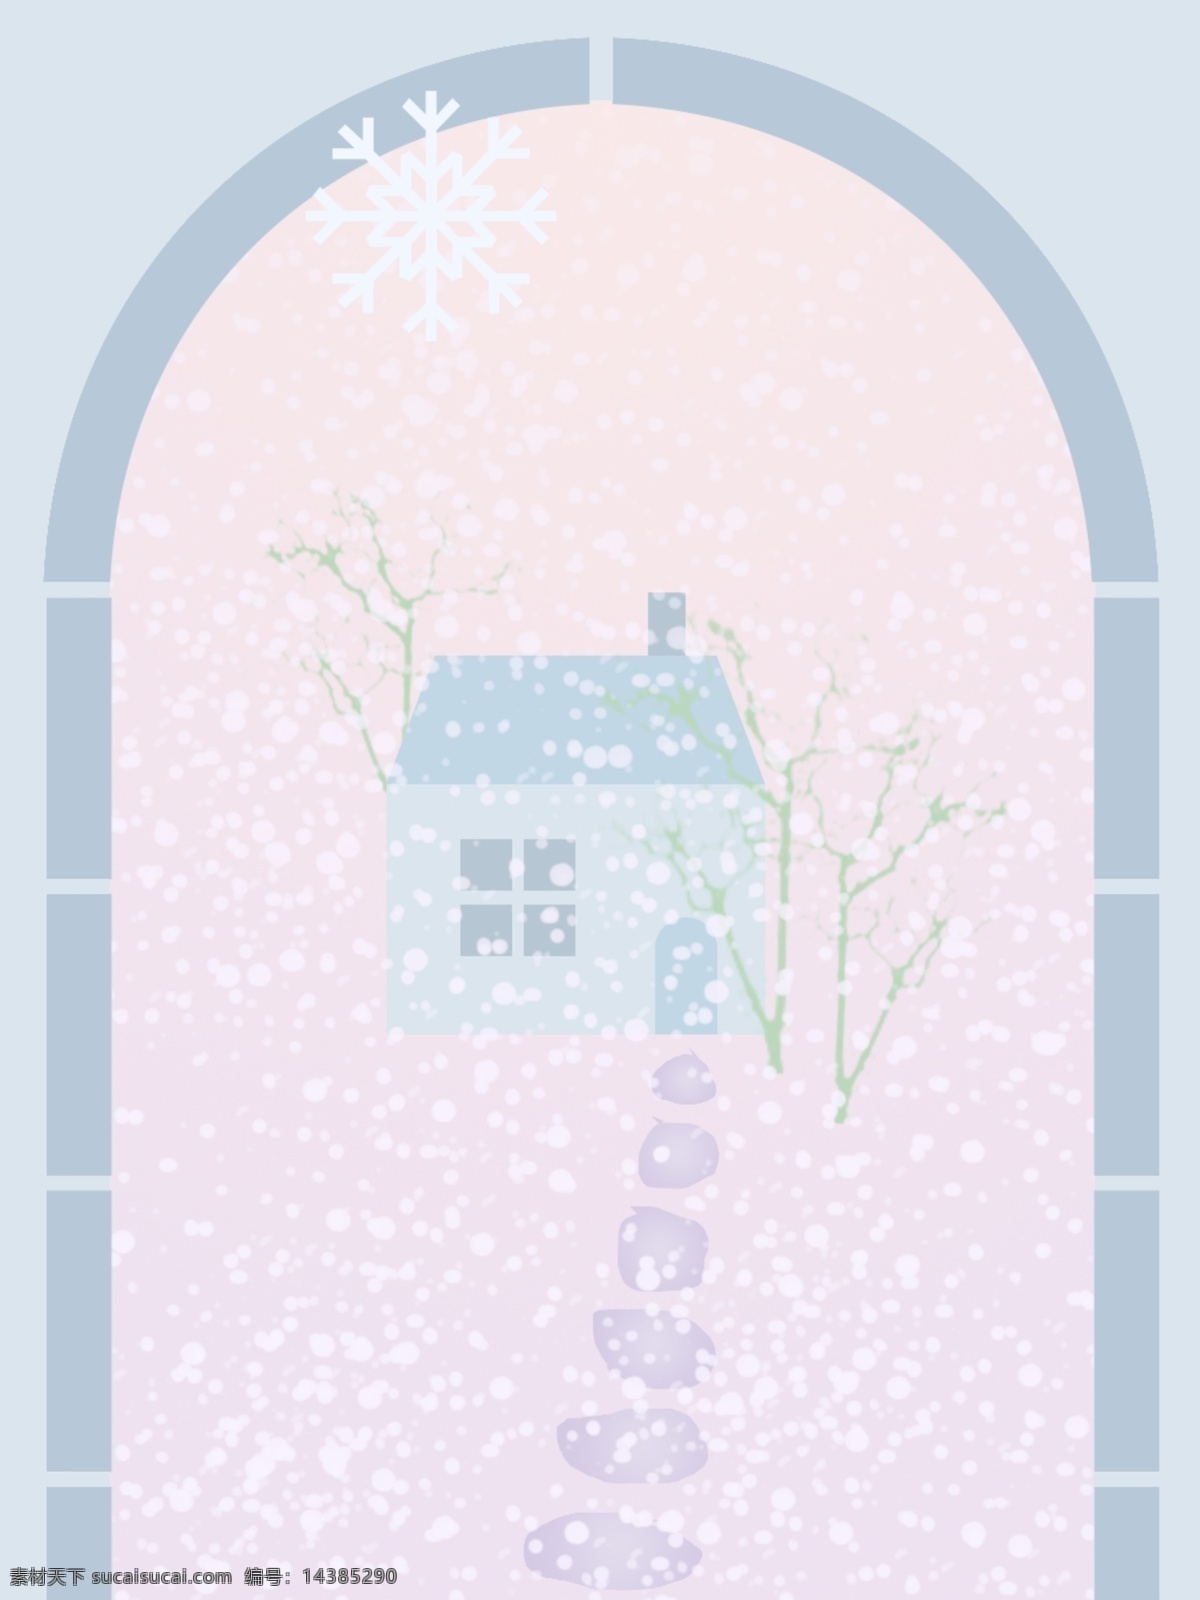 雪景 冬天 蓝色 粉色 紫色 雪花 房子 石头路 背景 绿色 漫天飞雪 大雪 渐变 树干 窗外 门外 景色